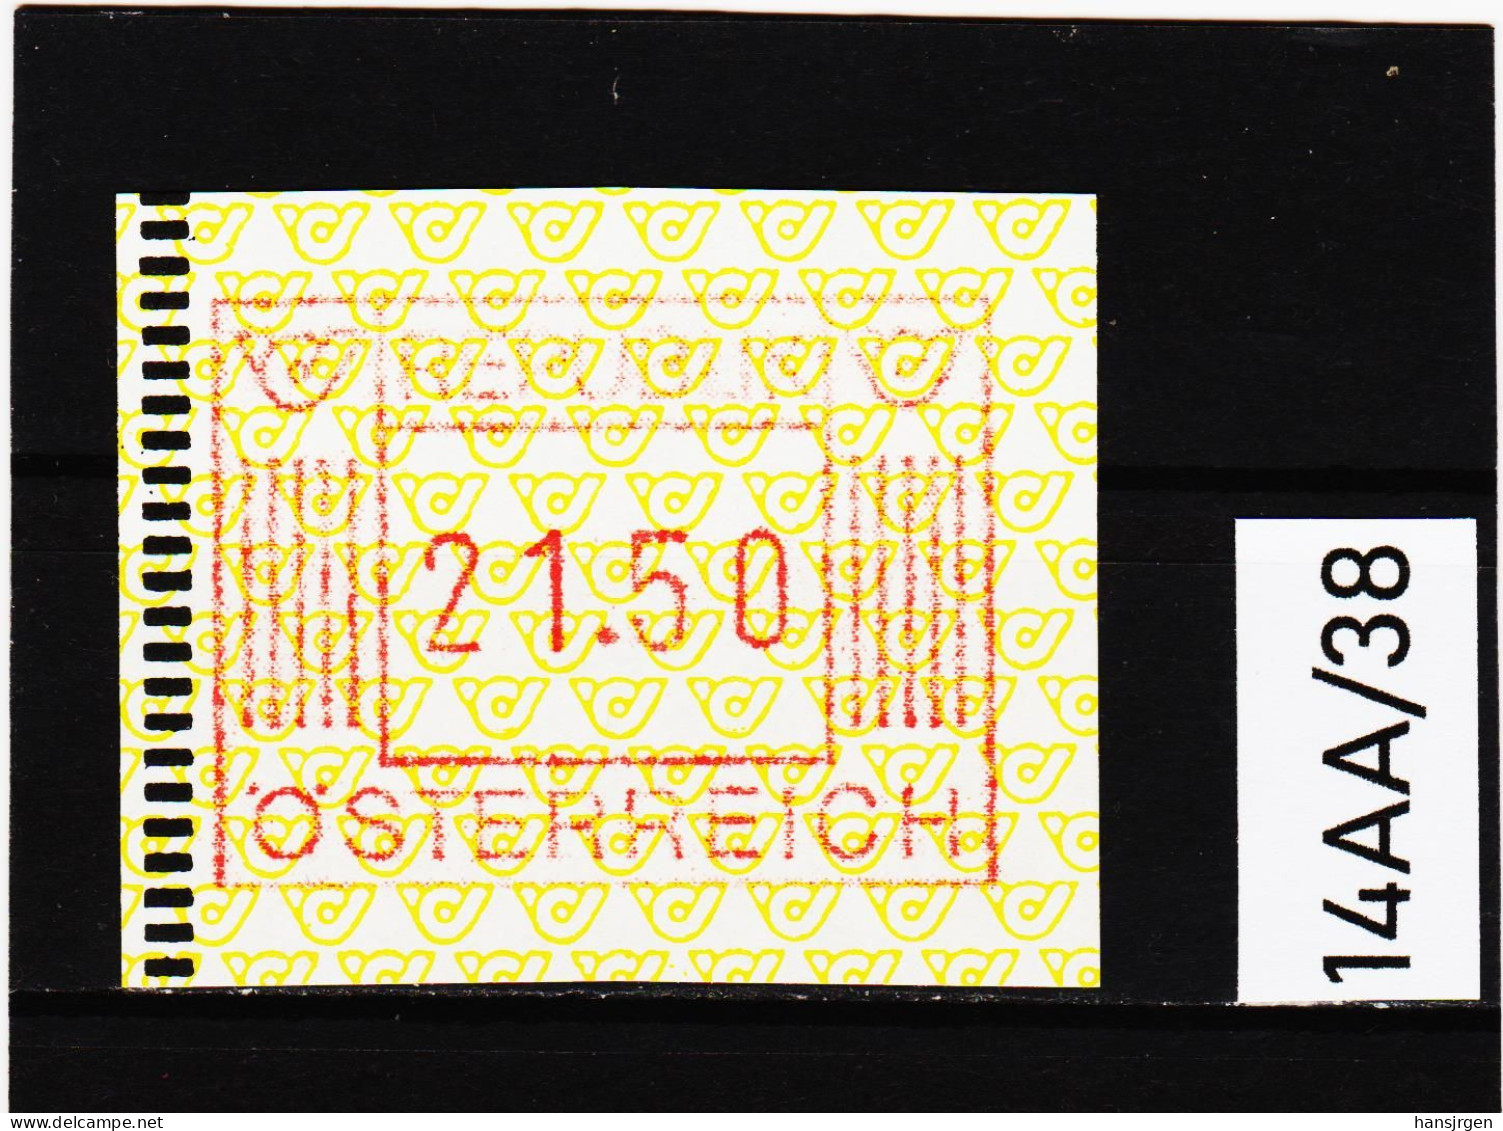 14AA/38  ÖSTERREICH 1983 AUTOMATENMARKEN 1. AUSGABE  21,50 SCHILLING   ** Postfrisch - Machine Labels [ATM]